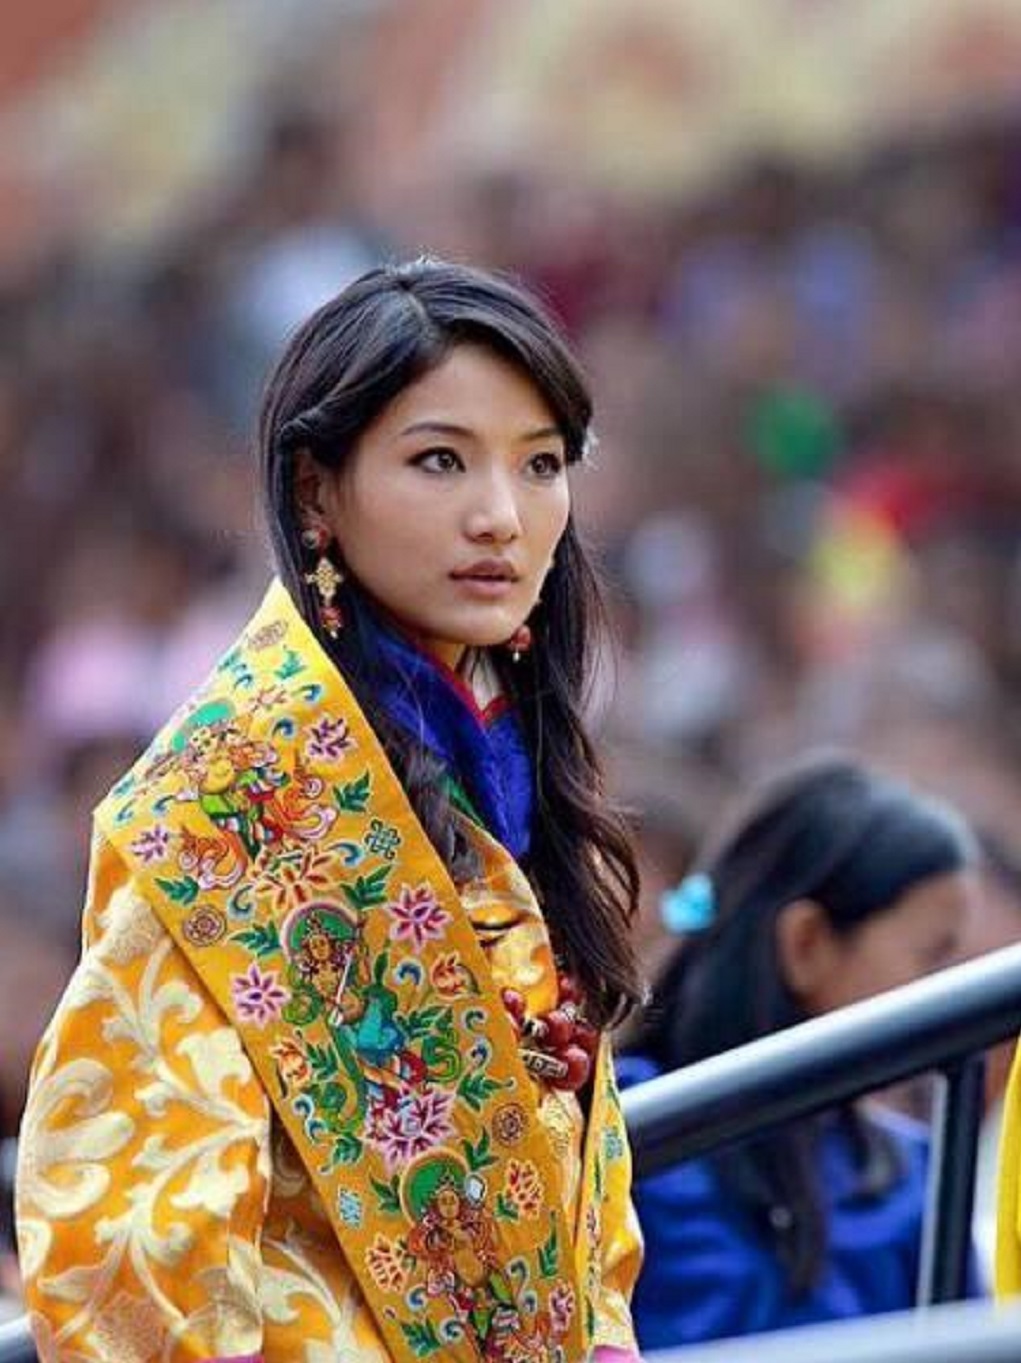 原创谁说不丹王室寒酸29岁佩玛王后戴黄金发箍硕大绿宝石超有面子